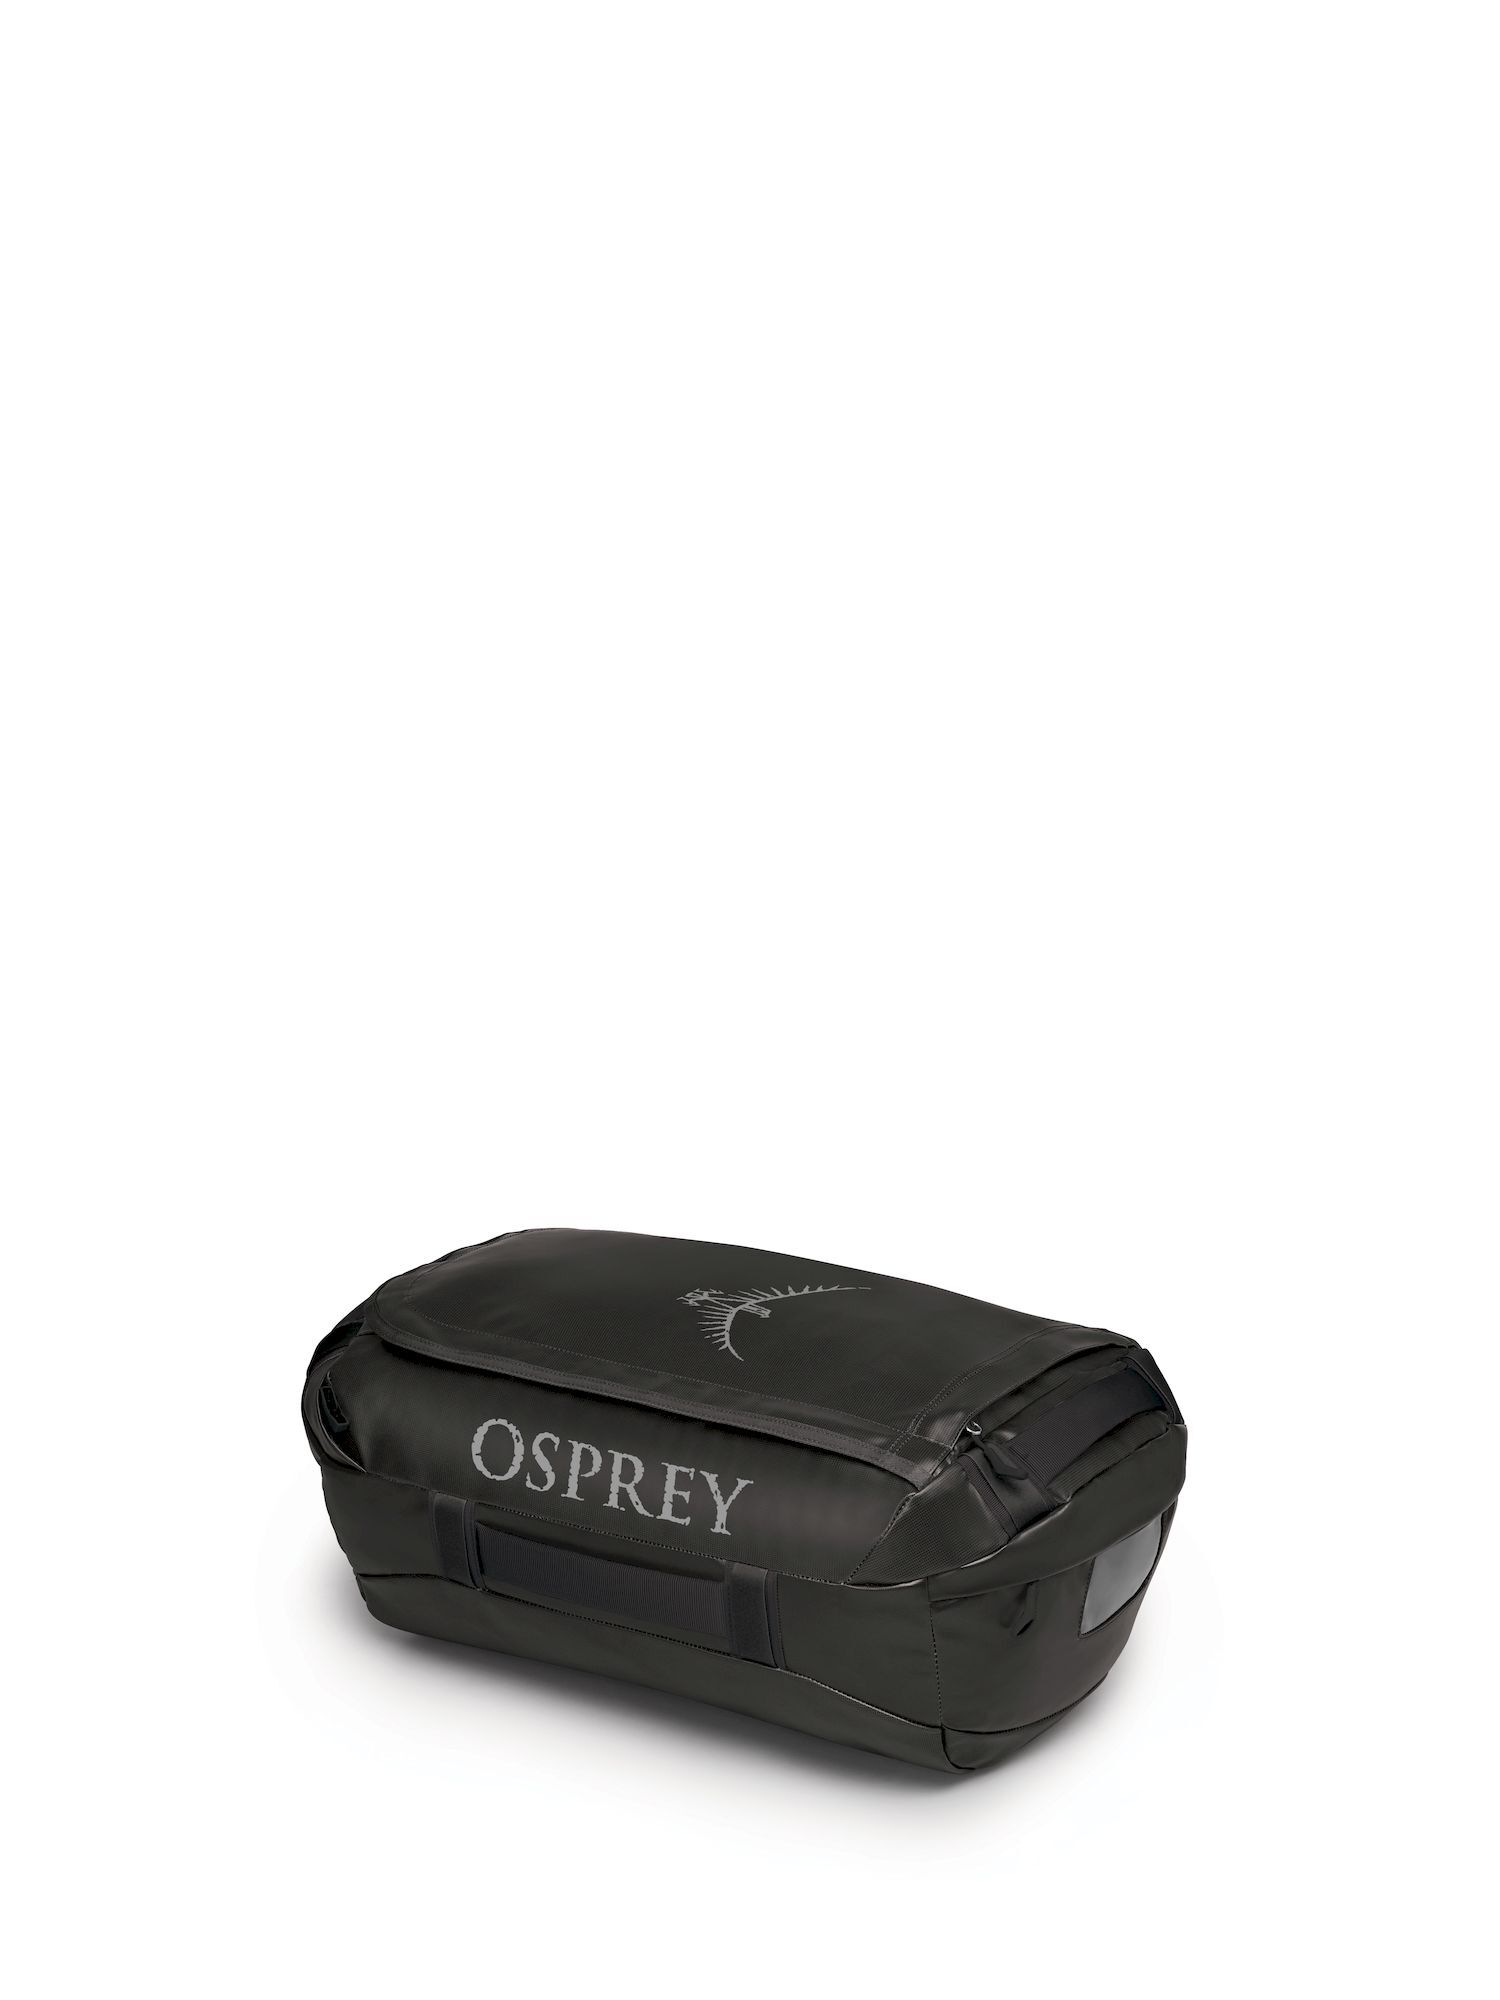 Osprey Transporter 40 - Reisetasche